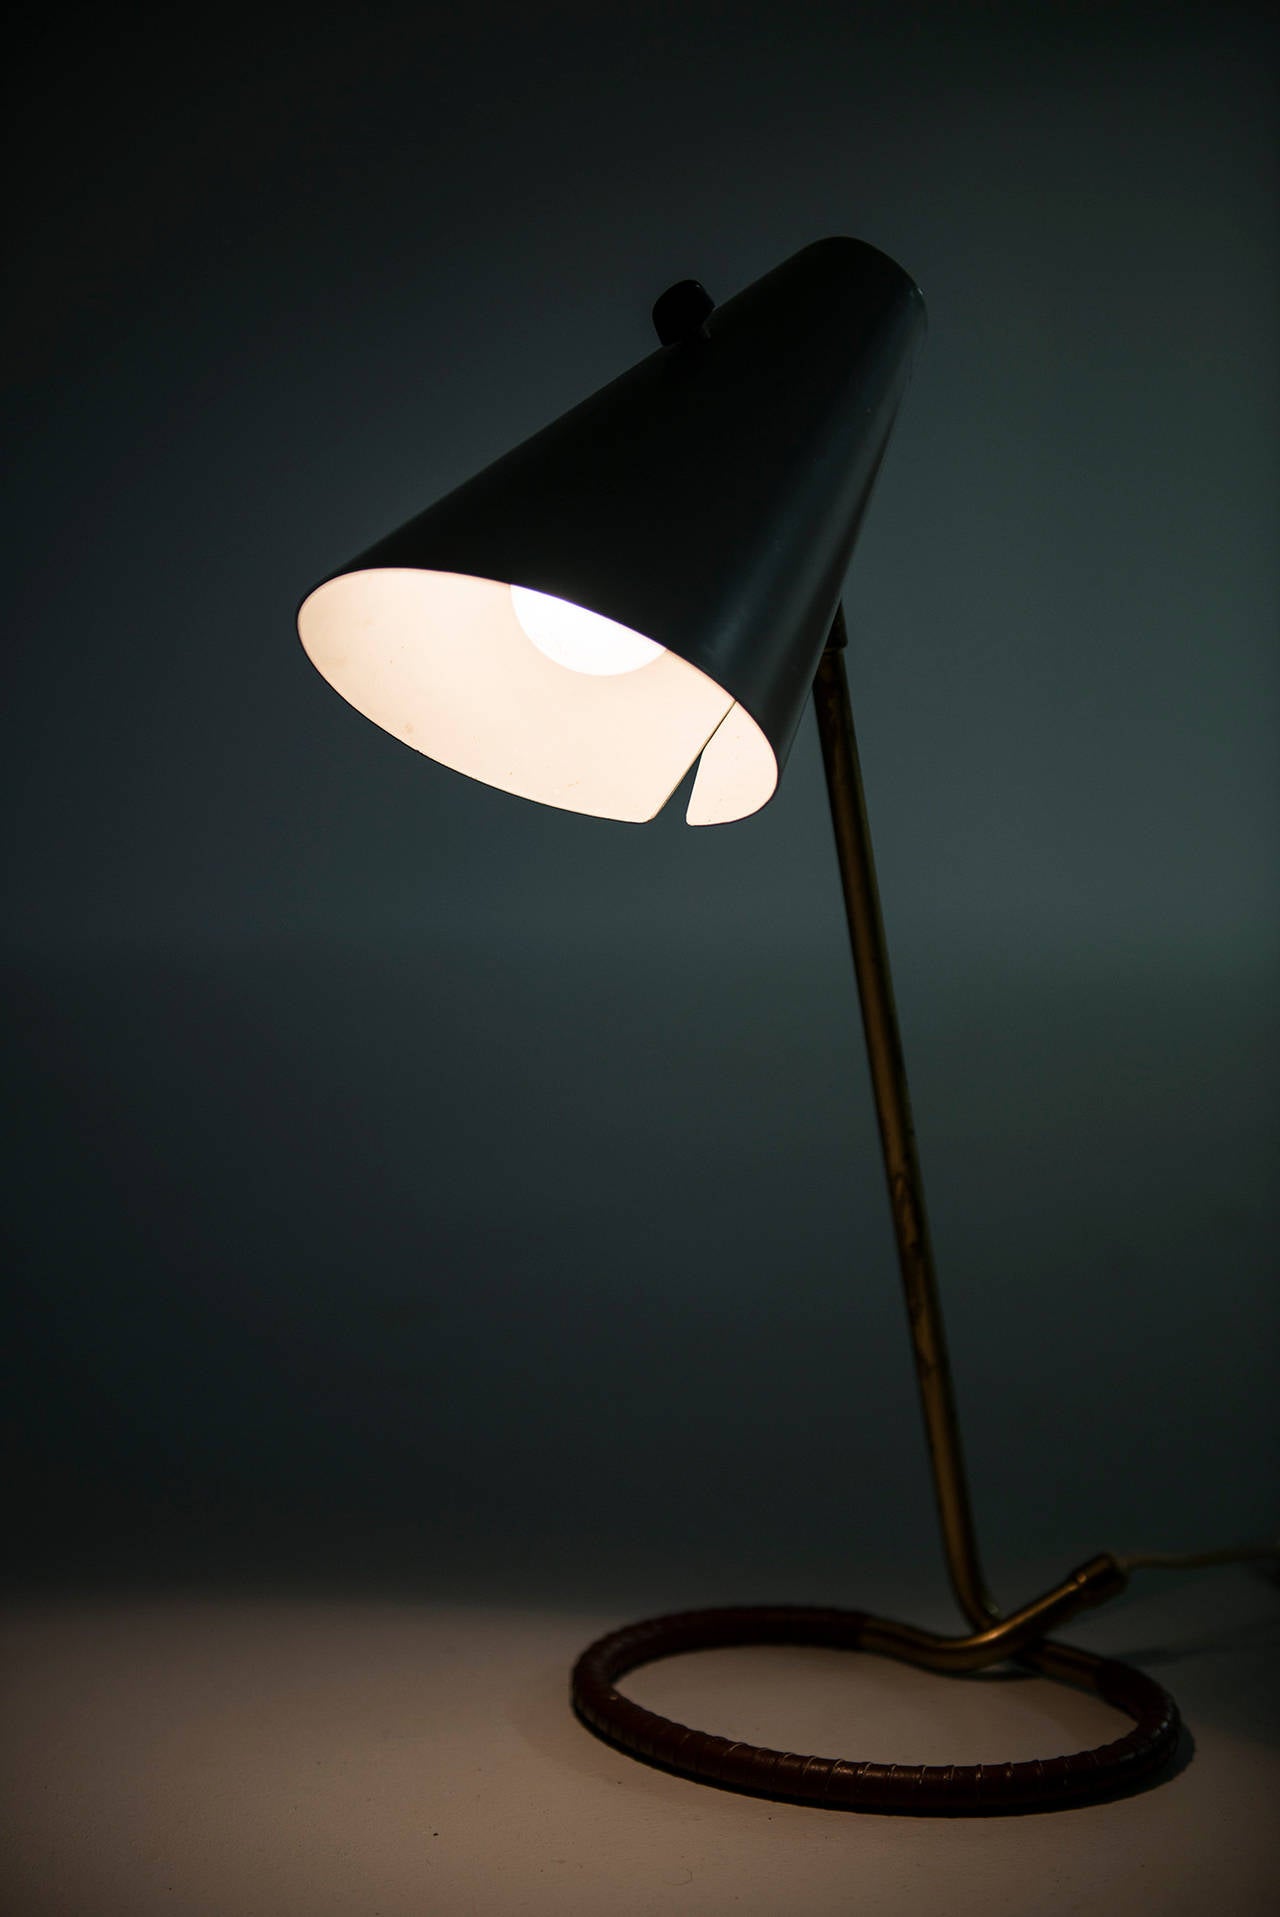 Brass Hans Bergström Table Lamp Model No. 711 by Ateljé Lyktan in Åhus, Sweden